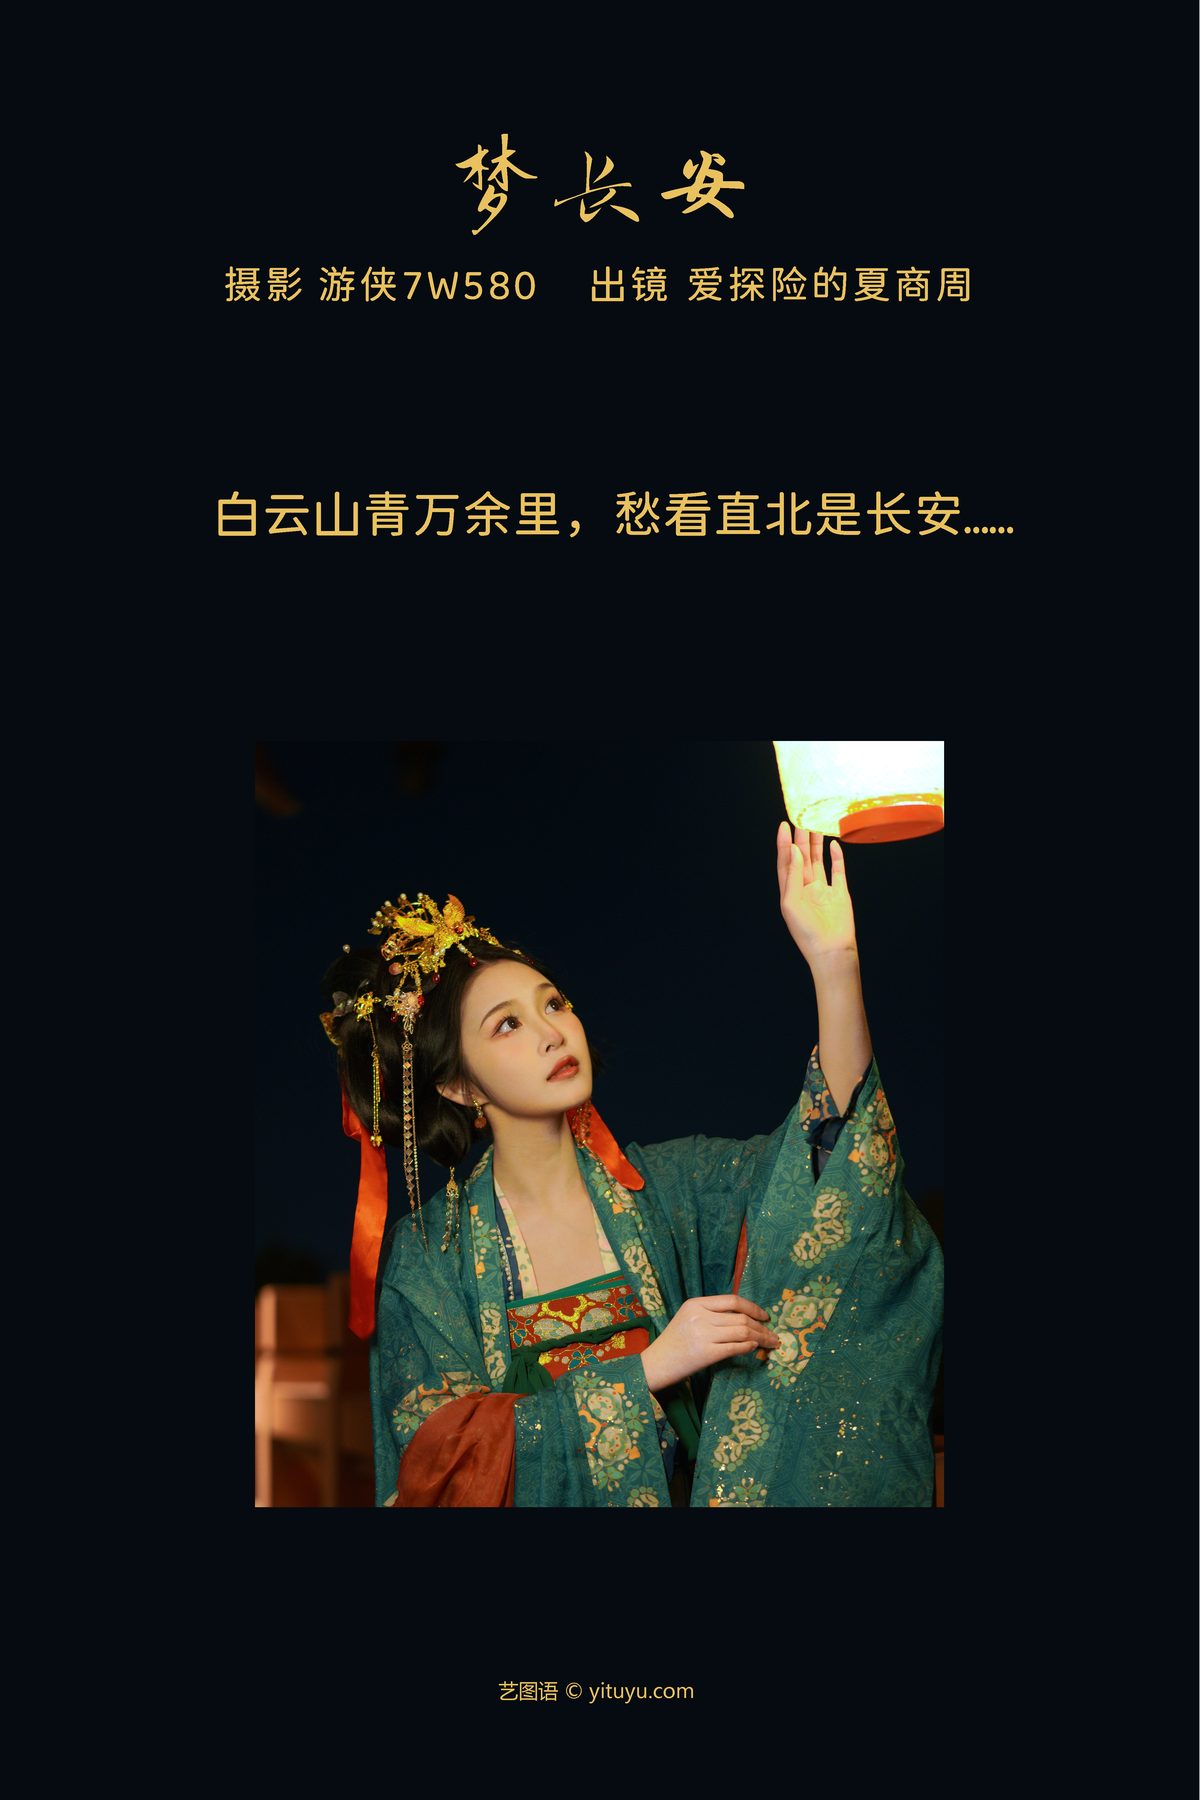 YiTuYu艺图语 Vol 3786 Ai Tan Xian De Xia Shang Zhou 0002 2365094720.jpg